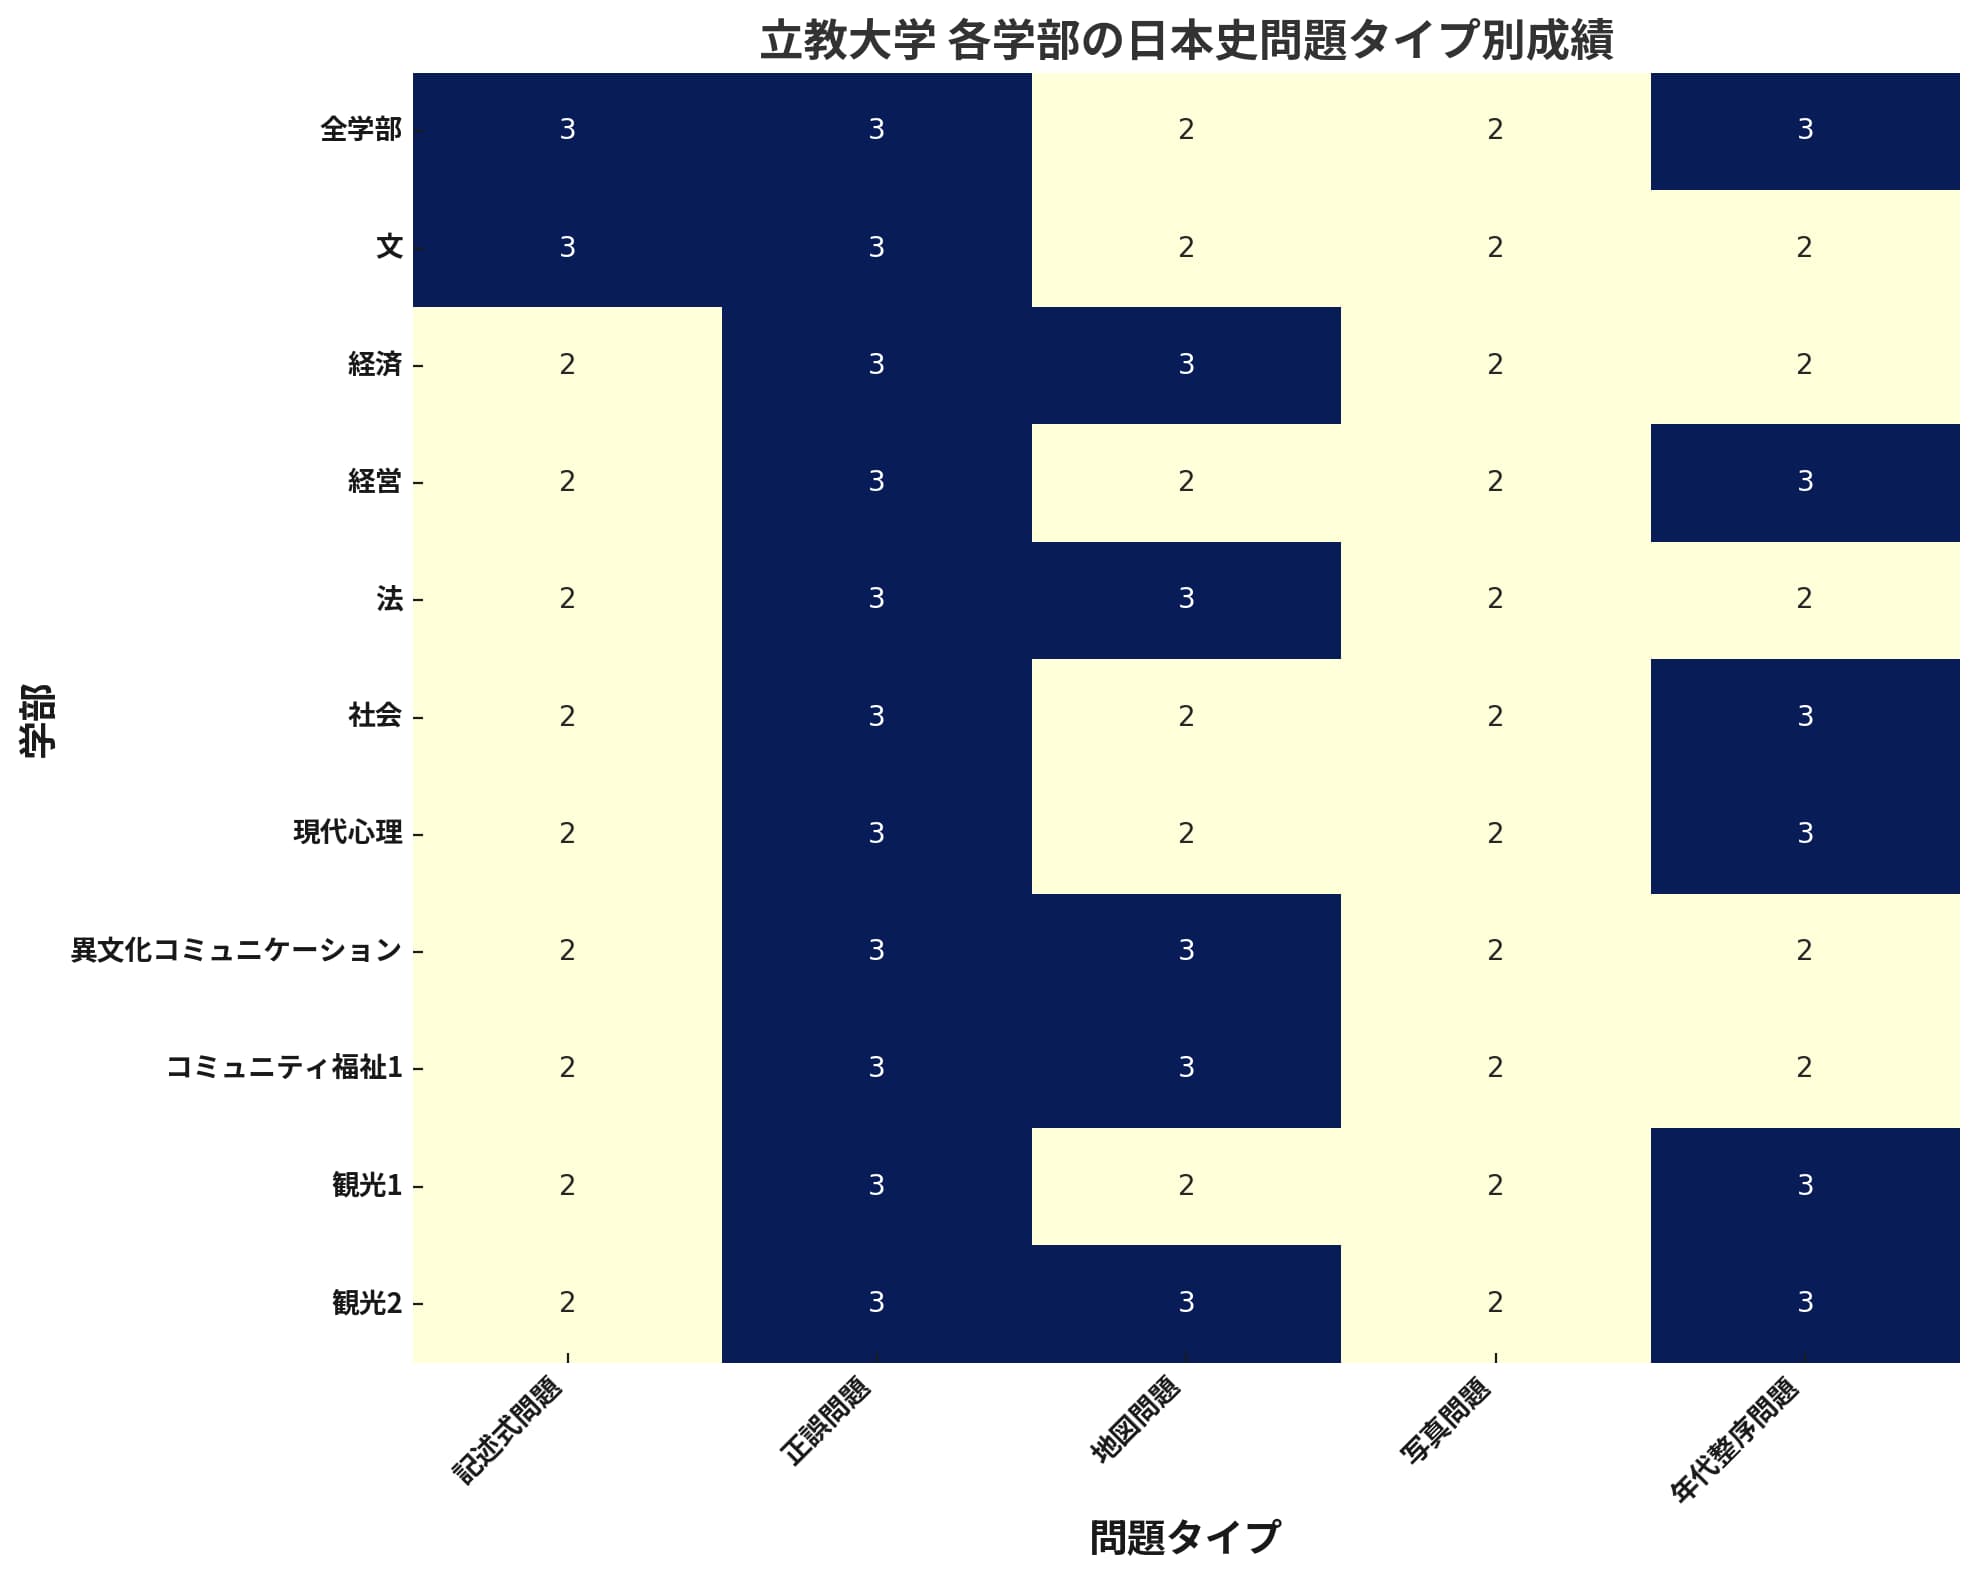 立教大学の各学部における日本史の問題タイプ別の成績を示すヒートマップ